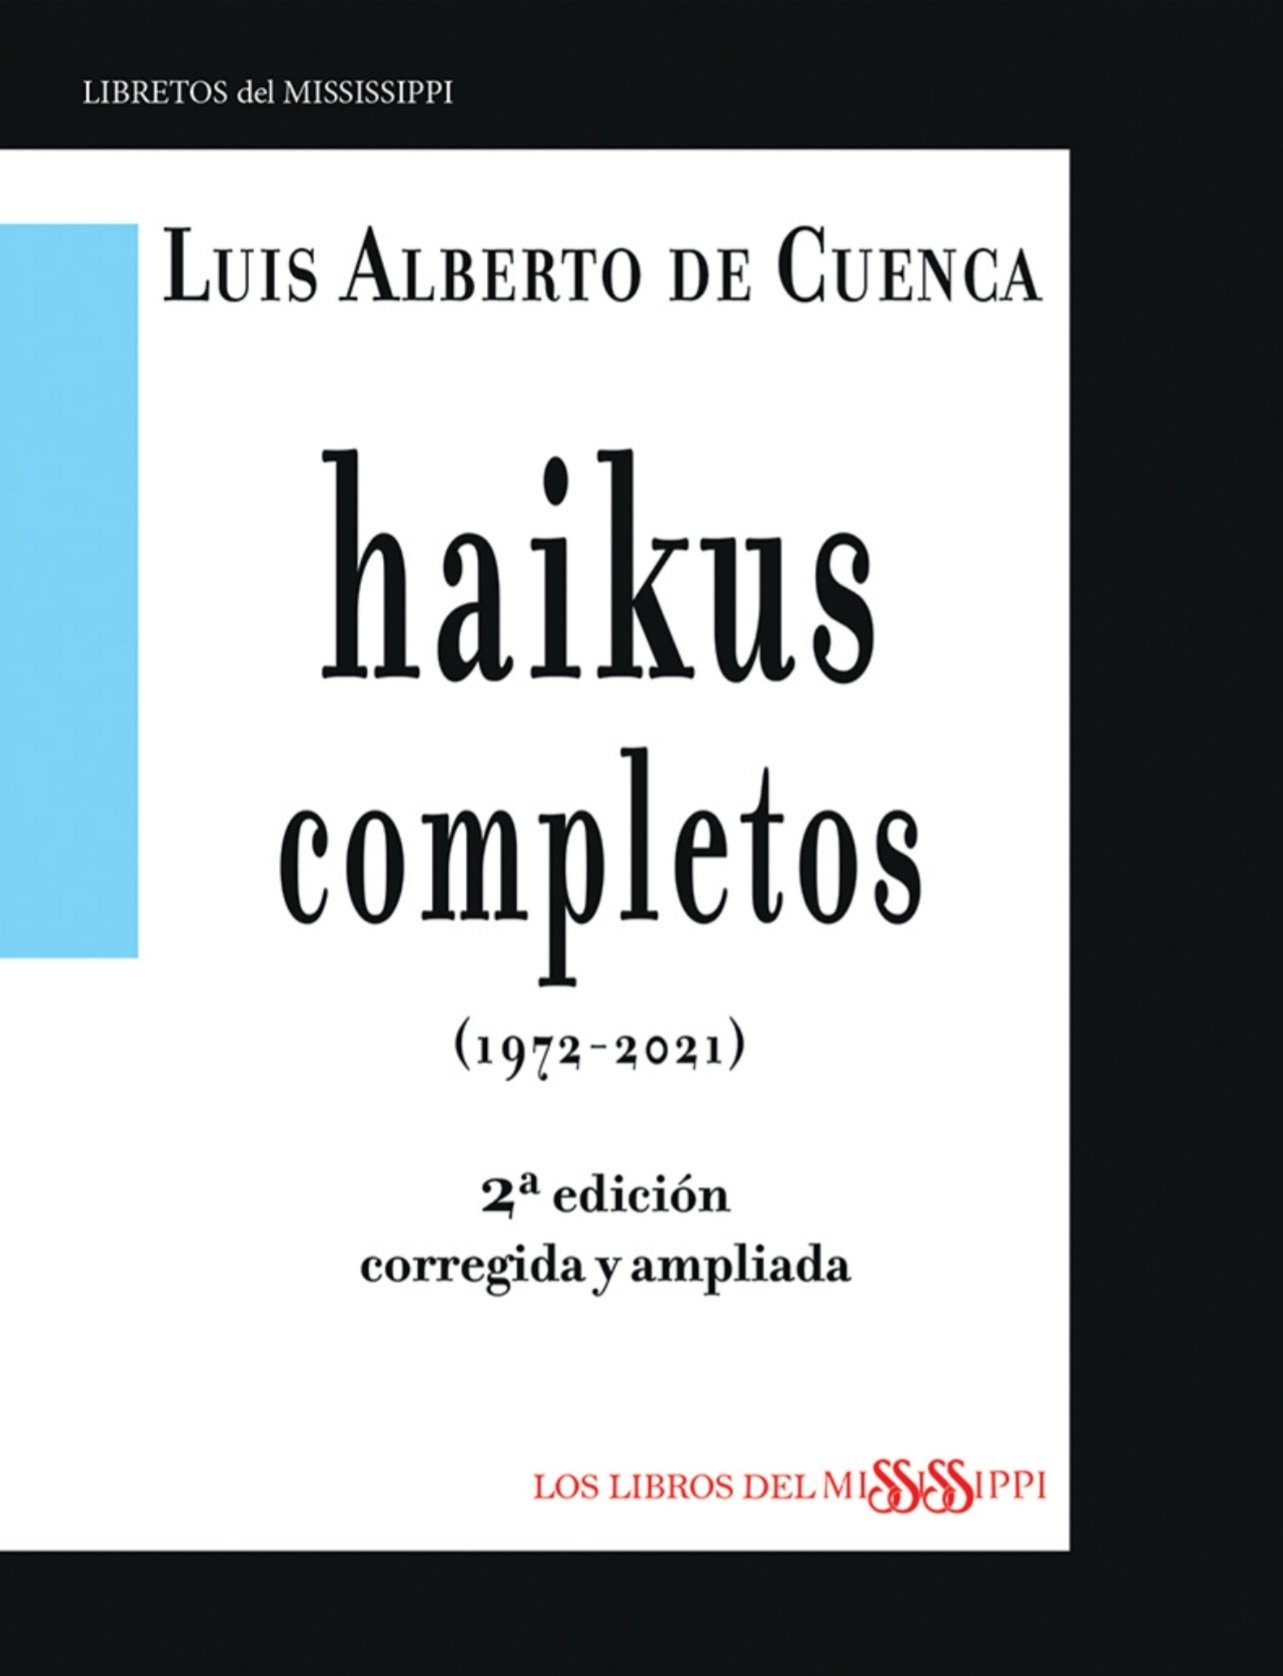 Portada de "Haikus completos, segunda edición corregida y aumentada", de Luis Alberto de Cuenca